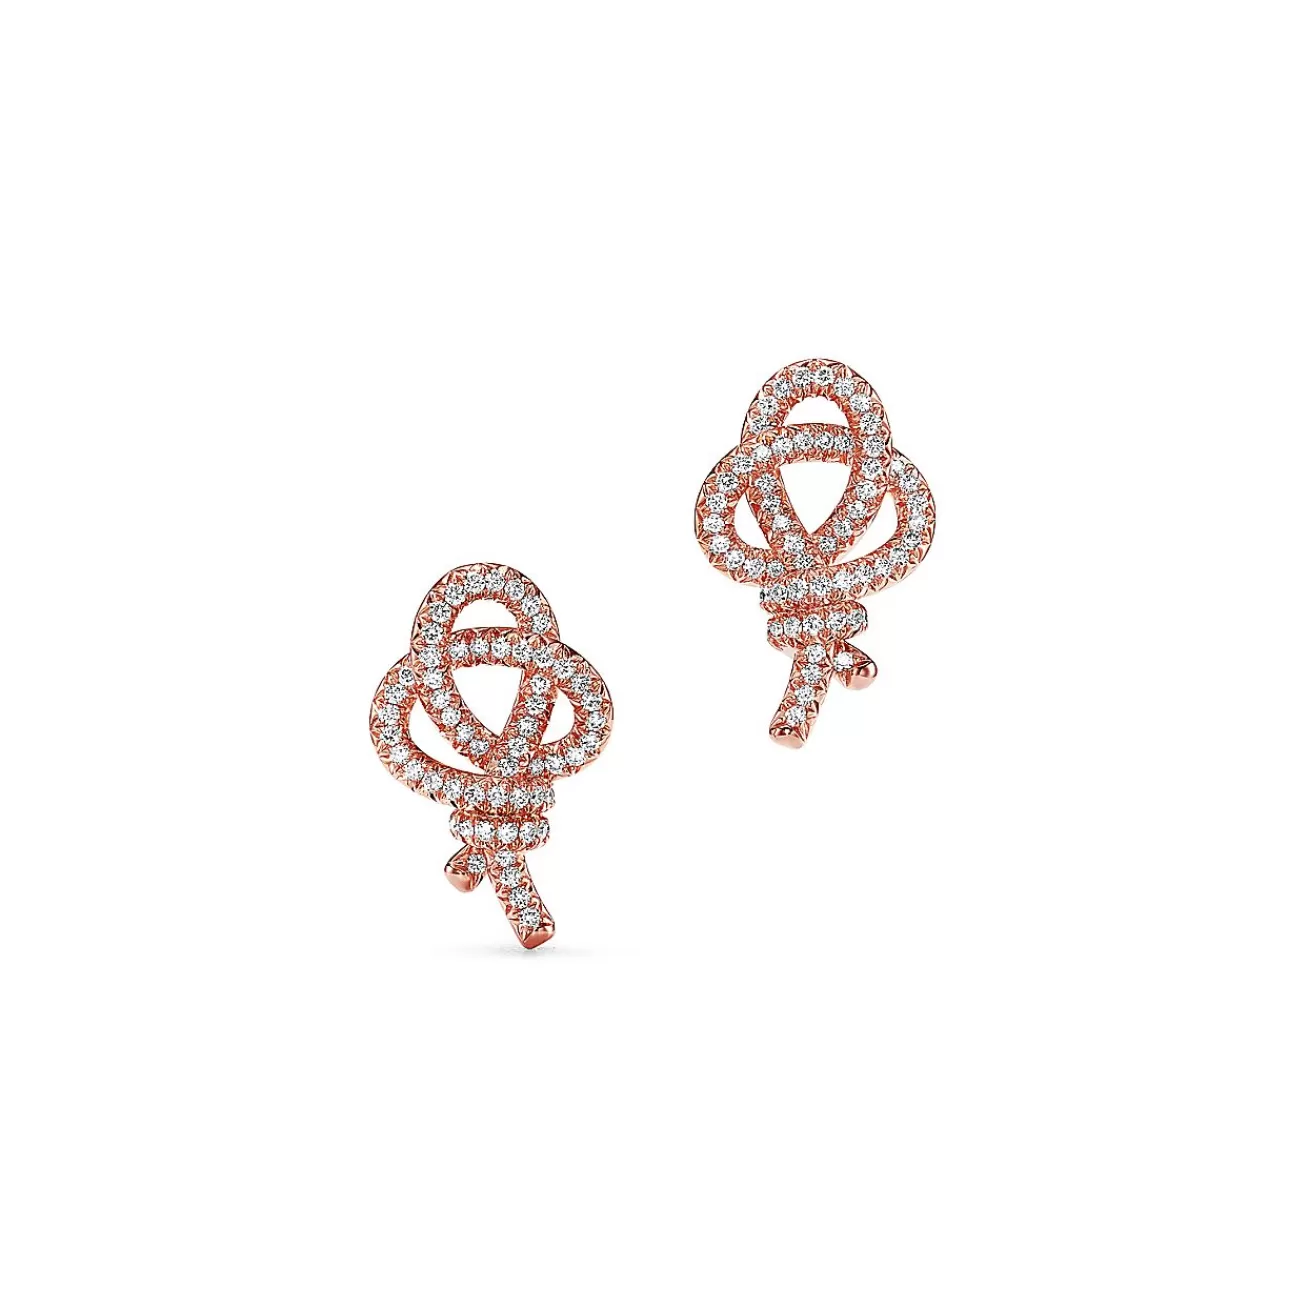 Tiffany & Co. Tiffany Keys Woven Keys Earrings in Rose Gold with Diamonds | ^ Earrings | New Jewelry